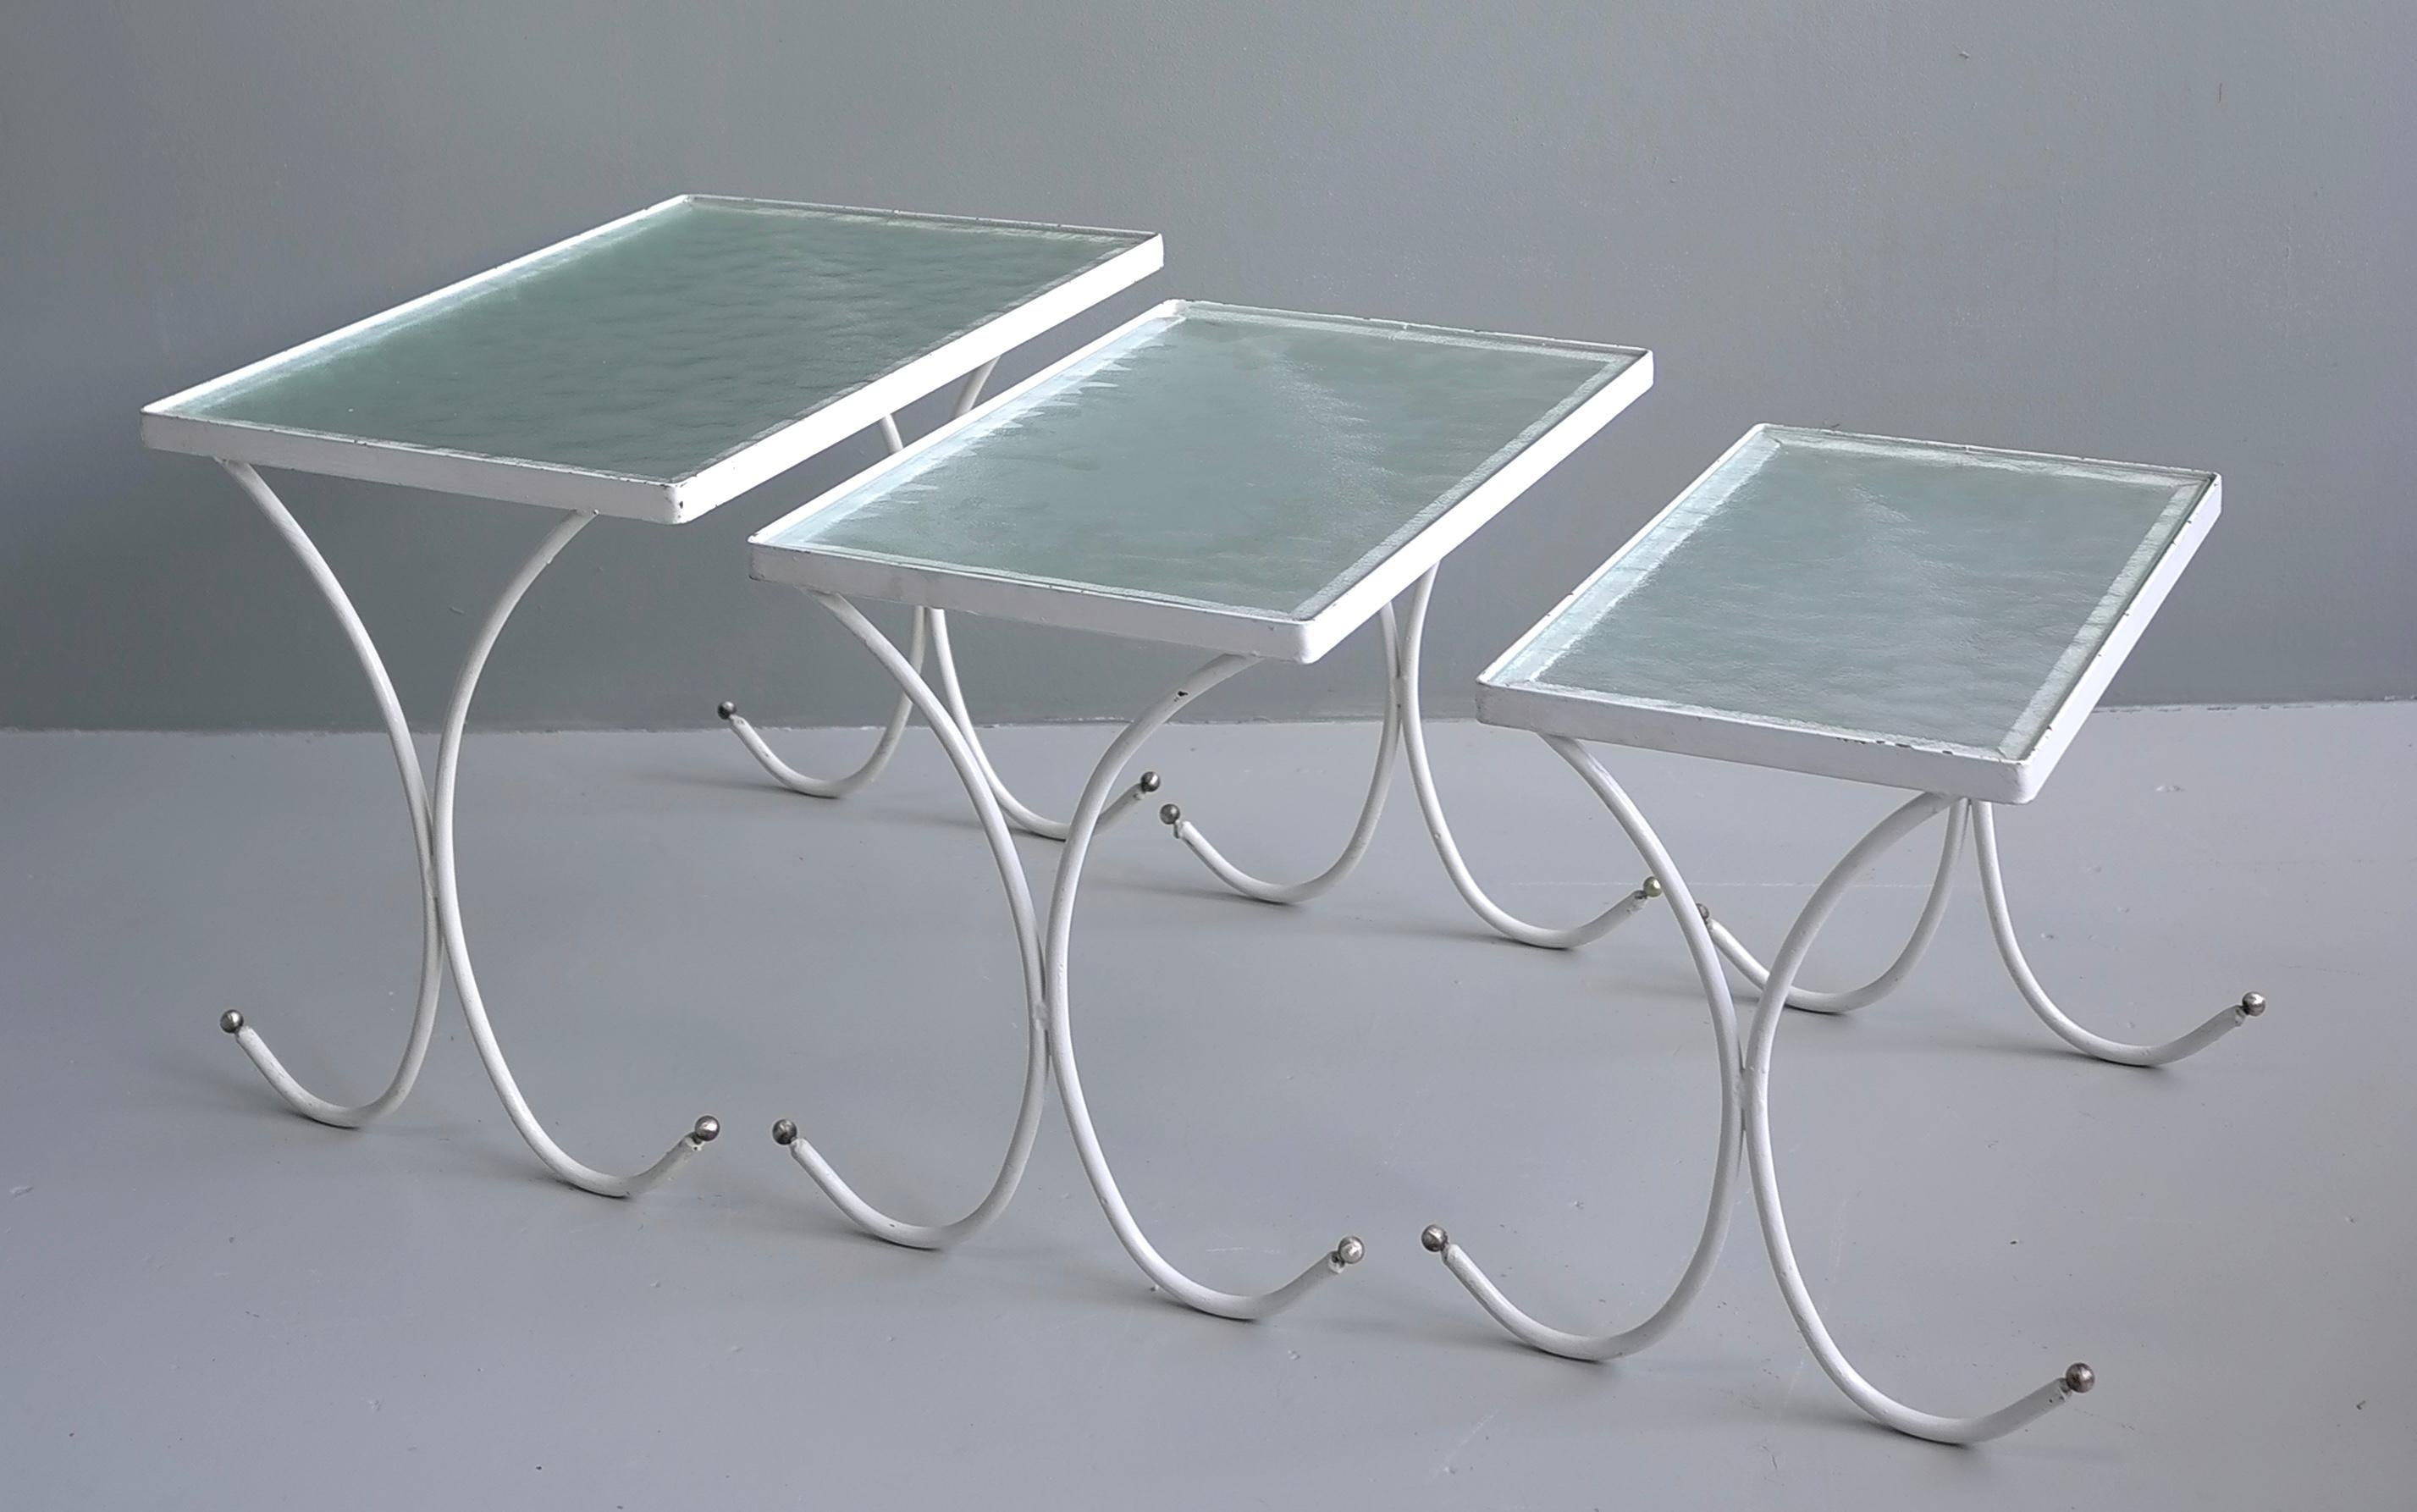 Satz von drei weißen Metall-Nesttischen, Frankreich 1950er Jahre

Die Tische haben Metallgestelle mit Messingkugeln und Glasplatten.